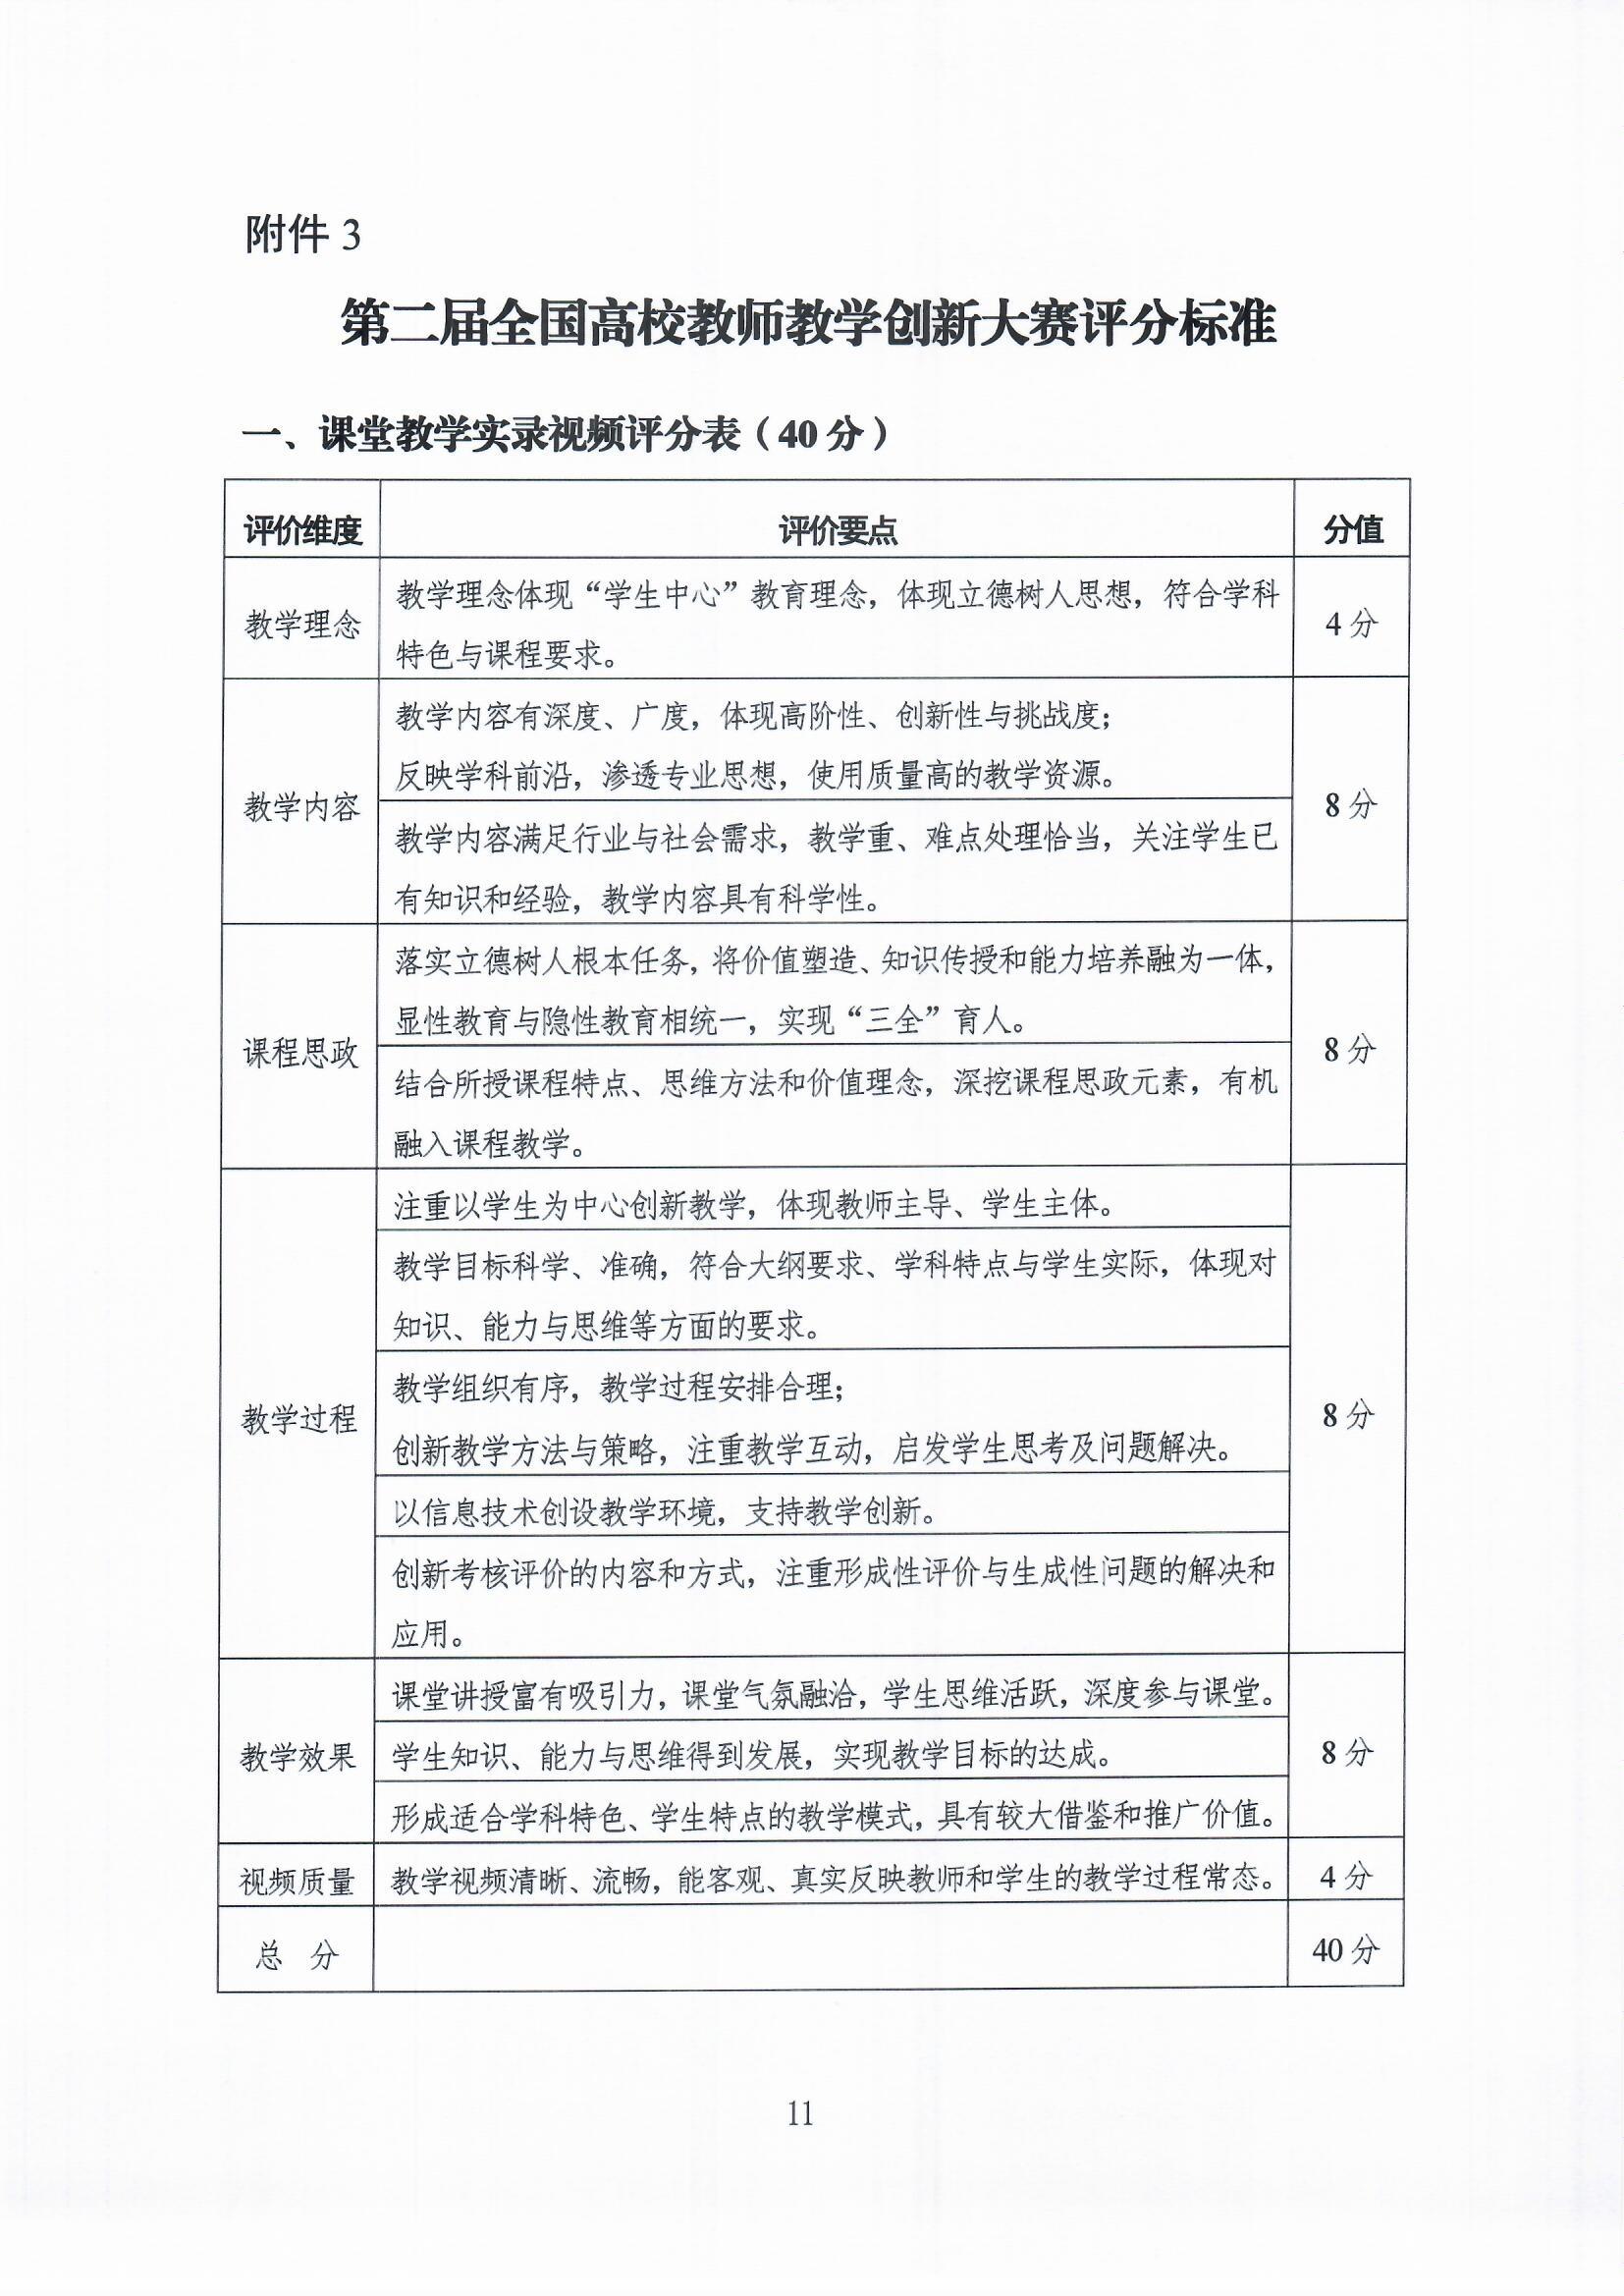 附件7.中国高等教育学会关于举办第二届全国高校教师教学创.jpg